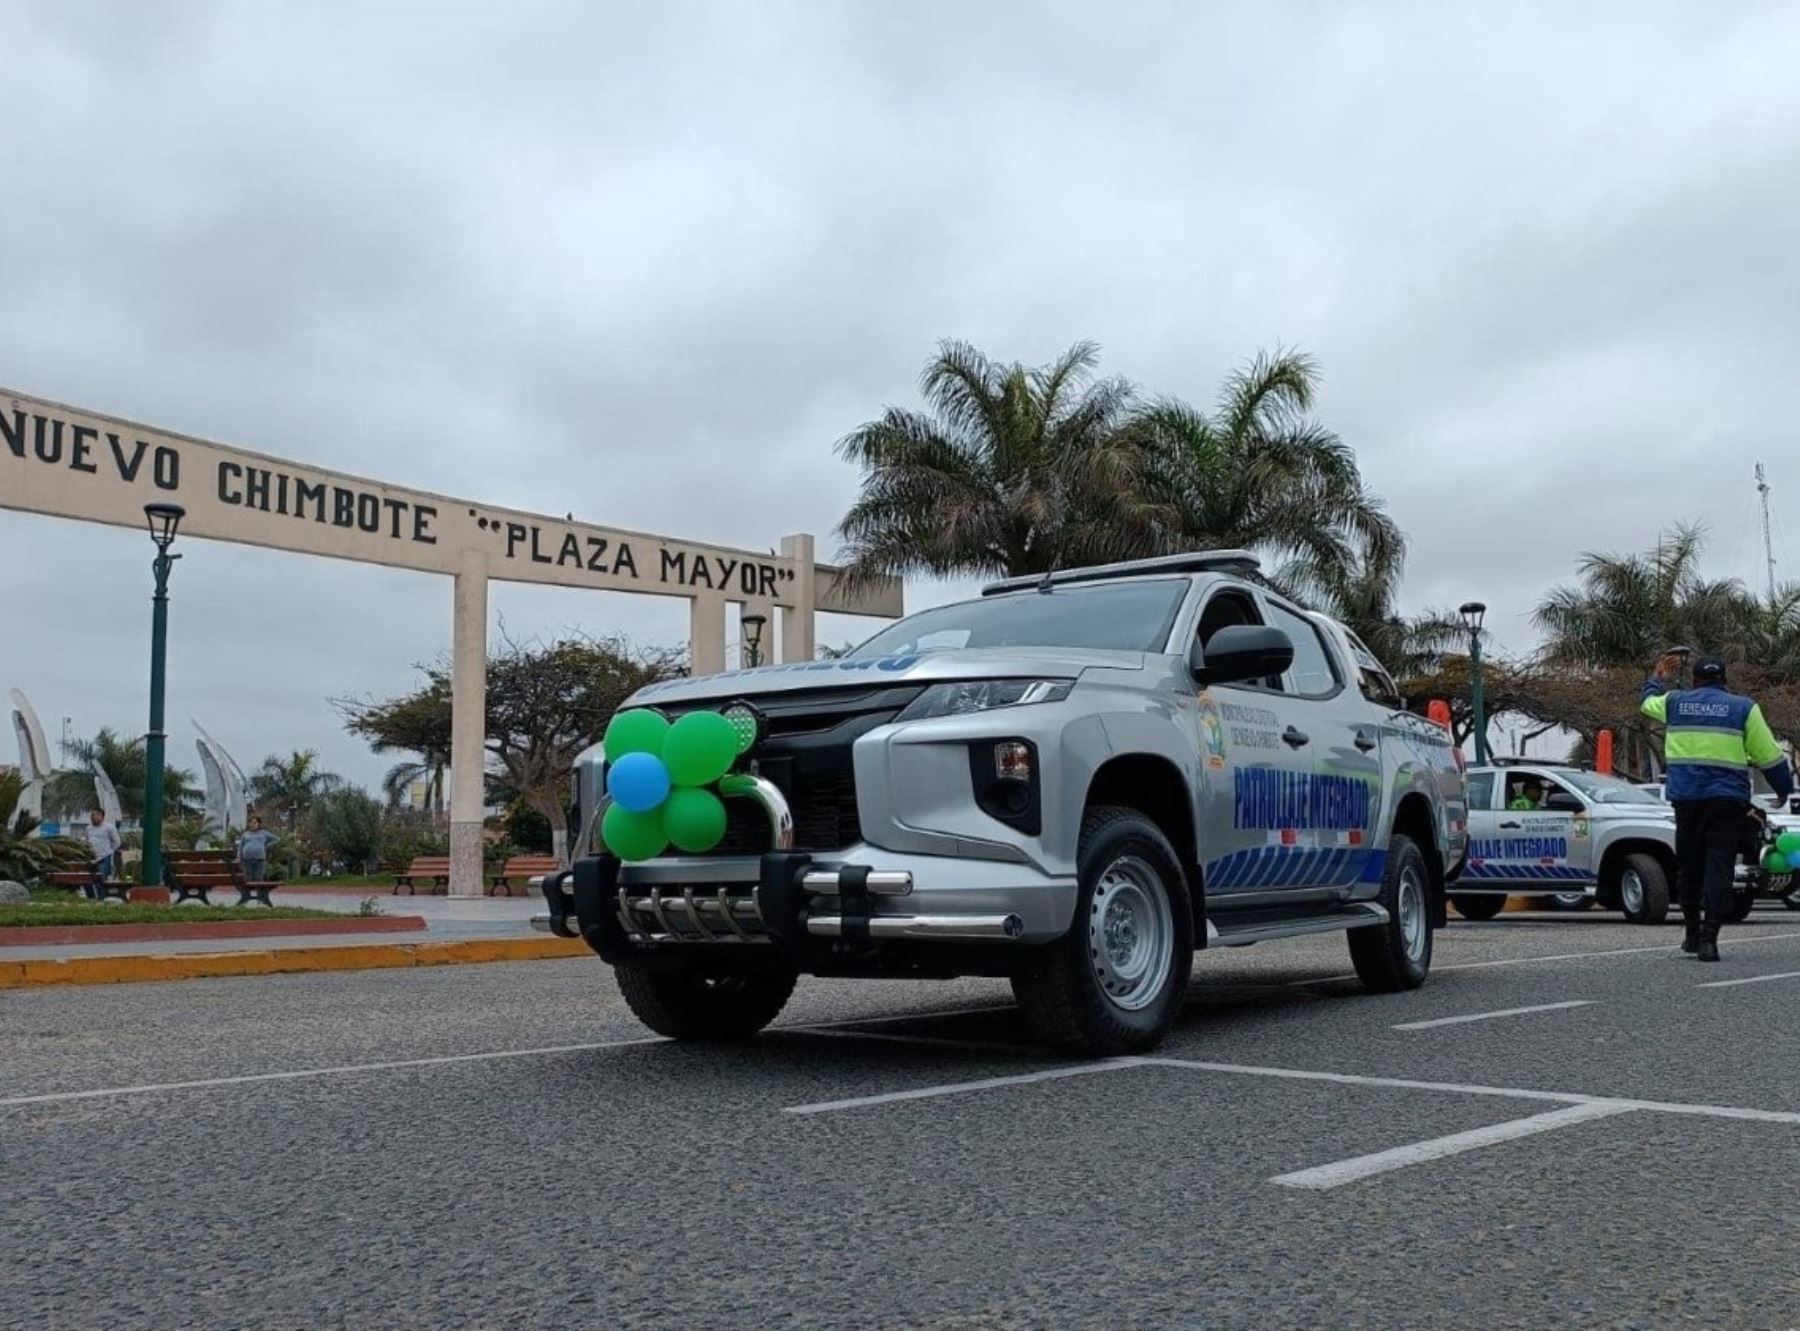 Municipalidad de Nuevo Chimbote, región Áncash, adquirió 10 camionetas para reforzar lucha contra la delincuencia en ese distrito.